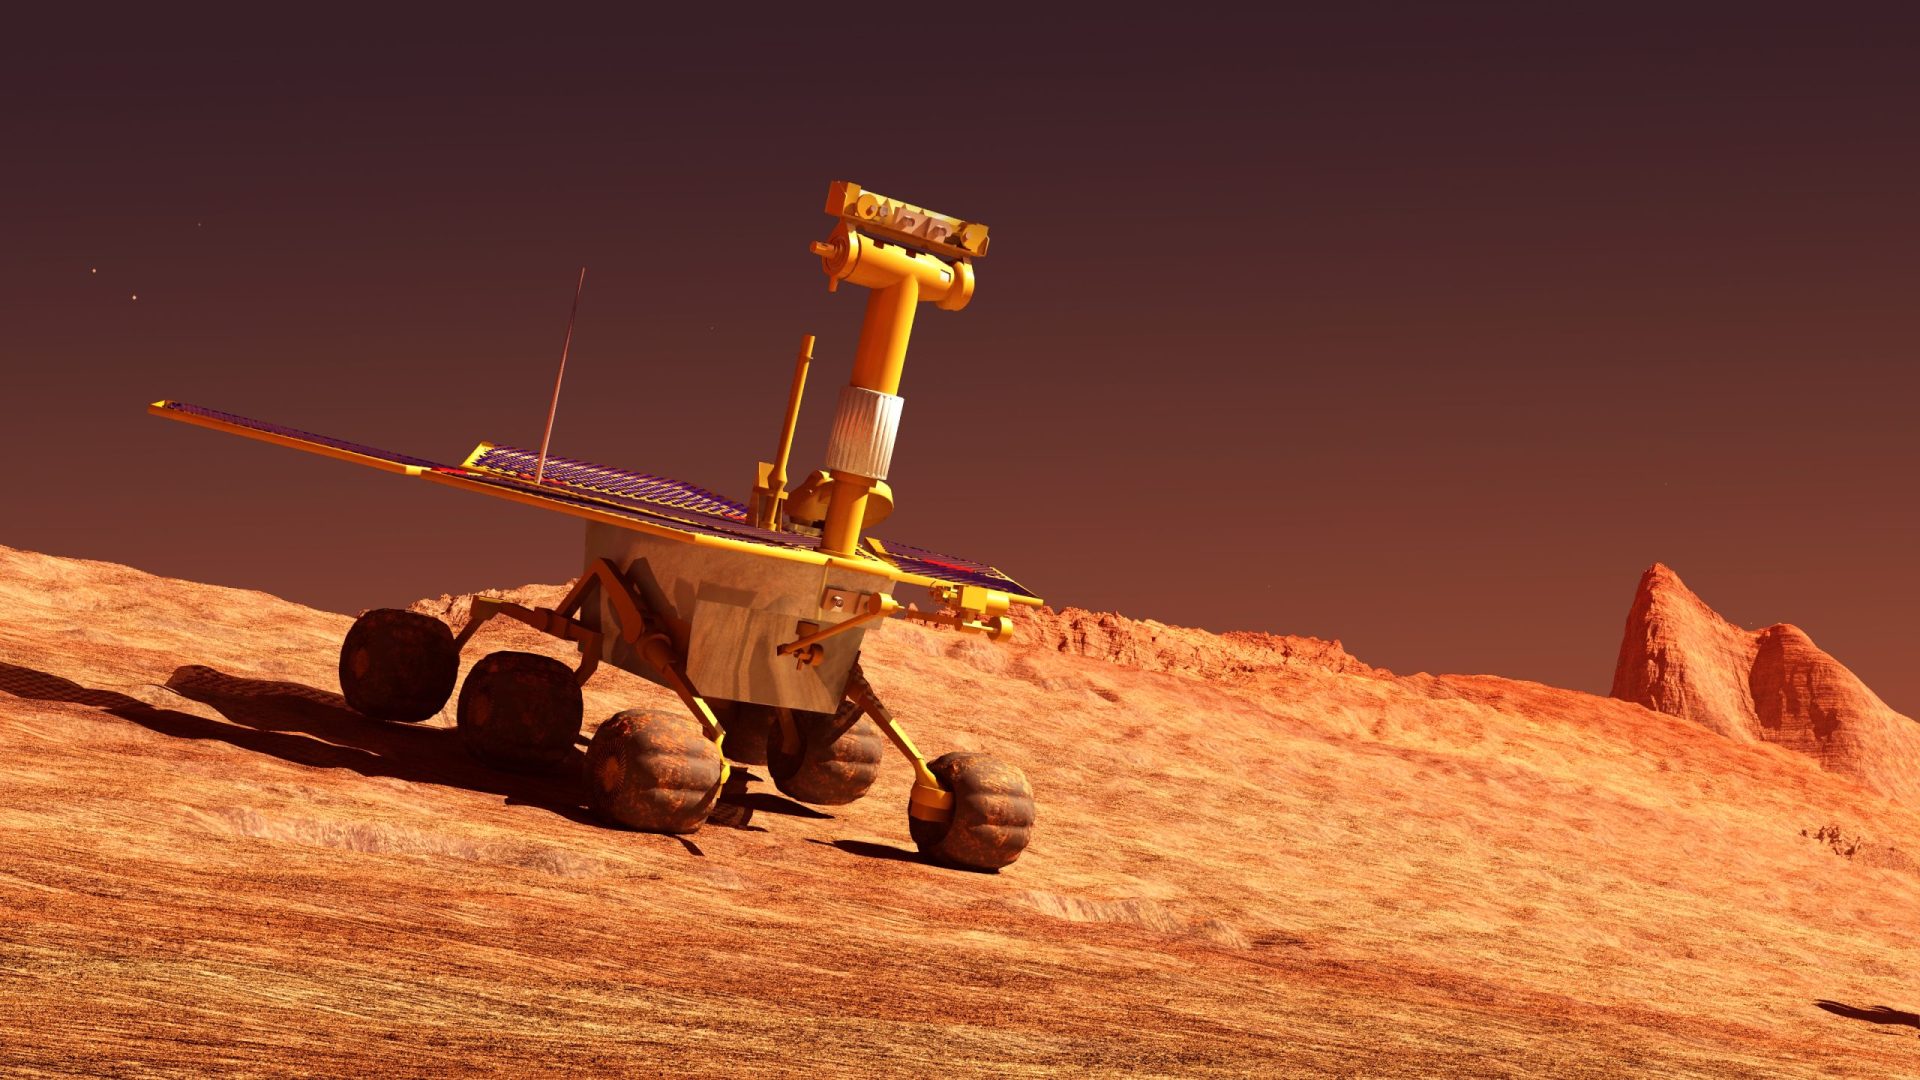 Descoberta em Marte sonda europeia desaparecida há mais de uma década